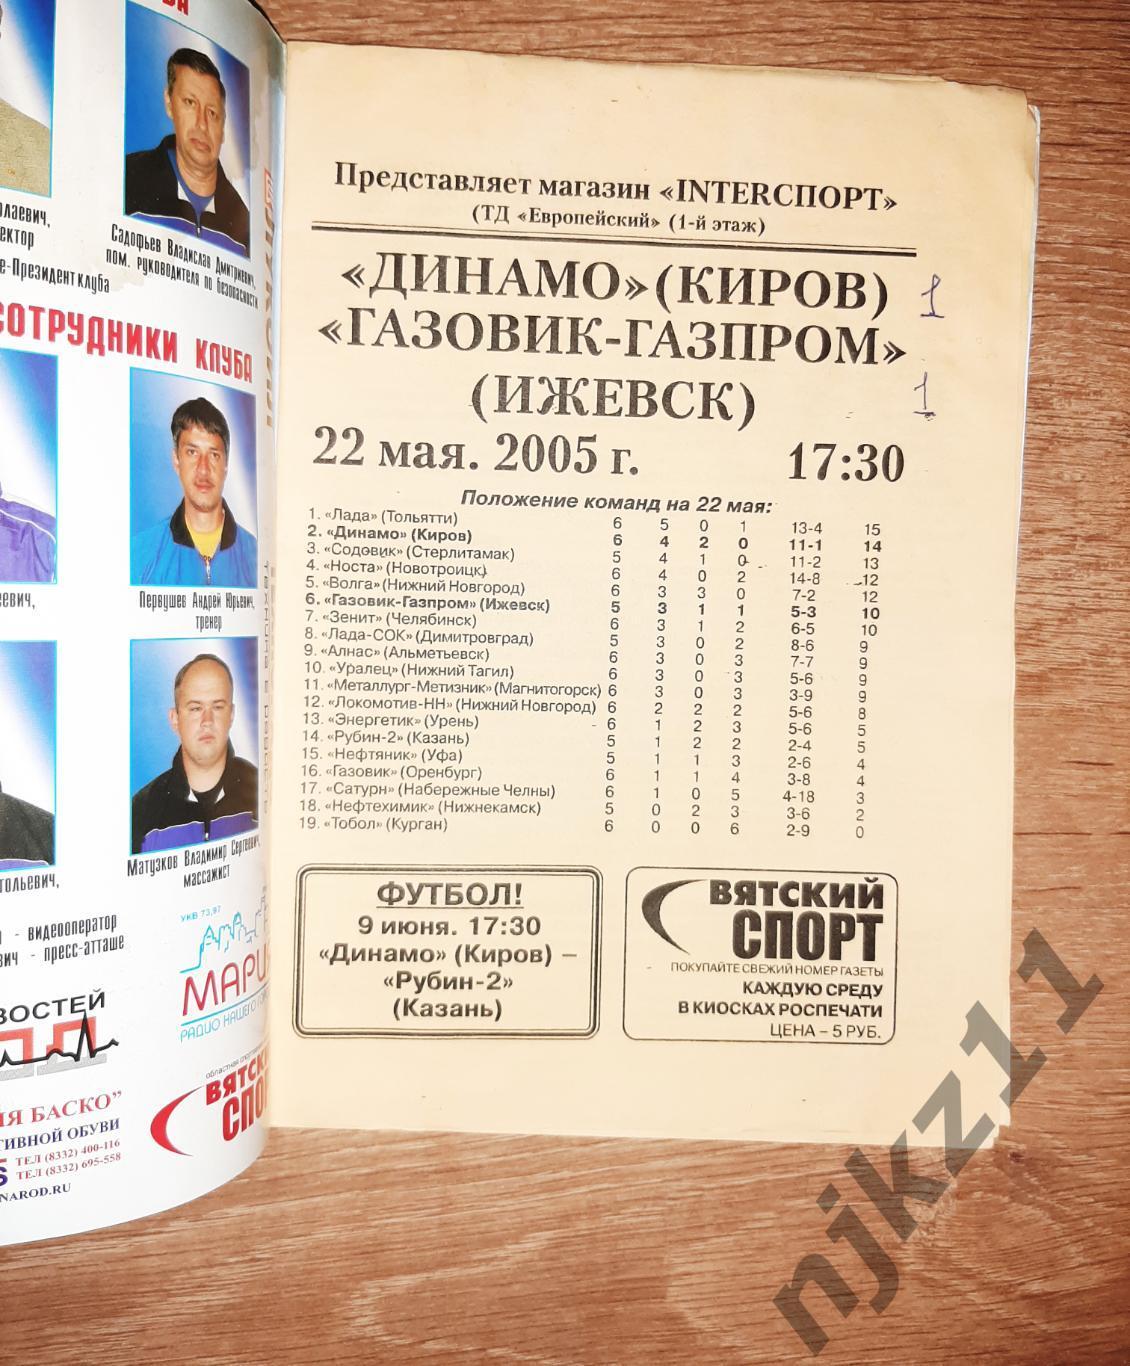 Динамо Киров-Газовик Газпром Ижевск 22.05.2005 1